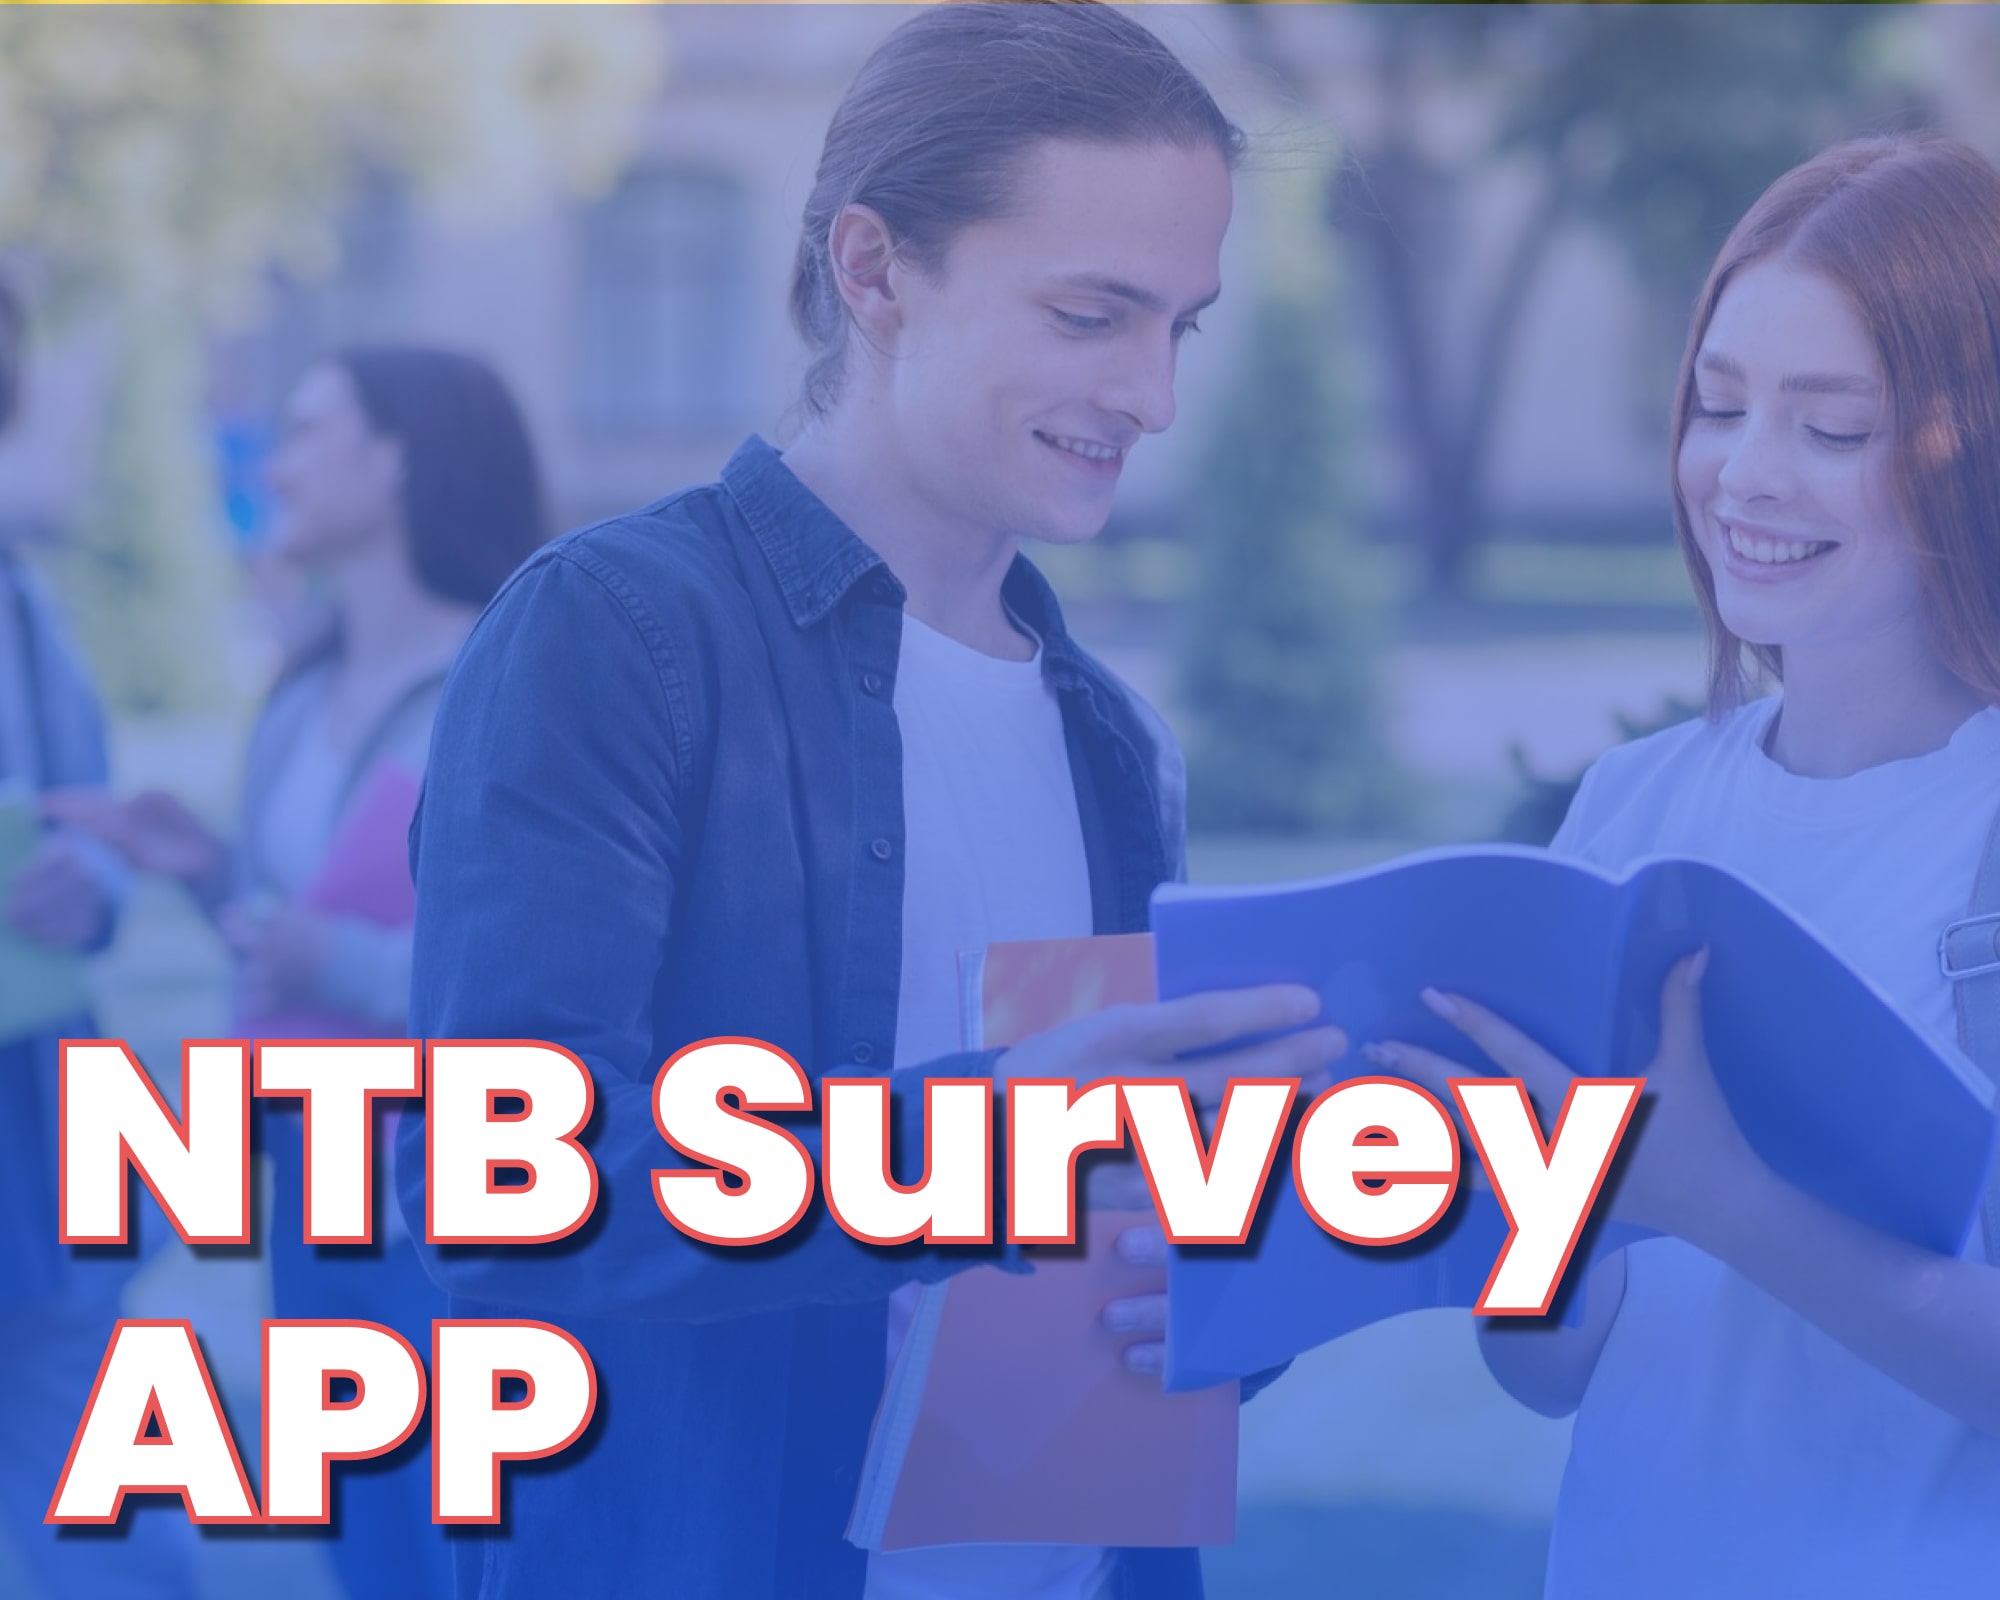 NTB survey app